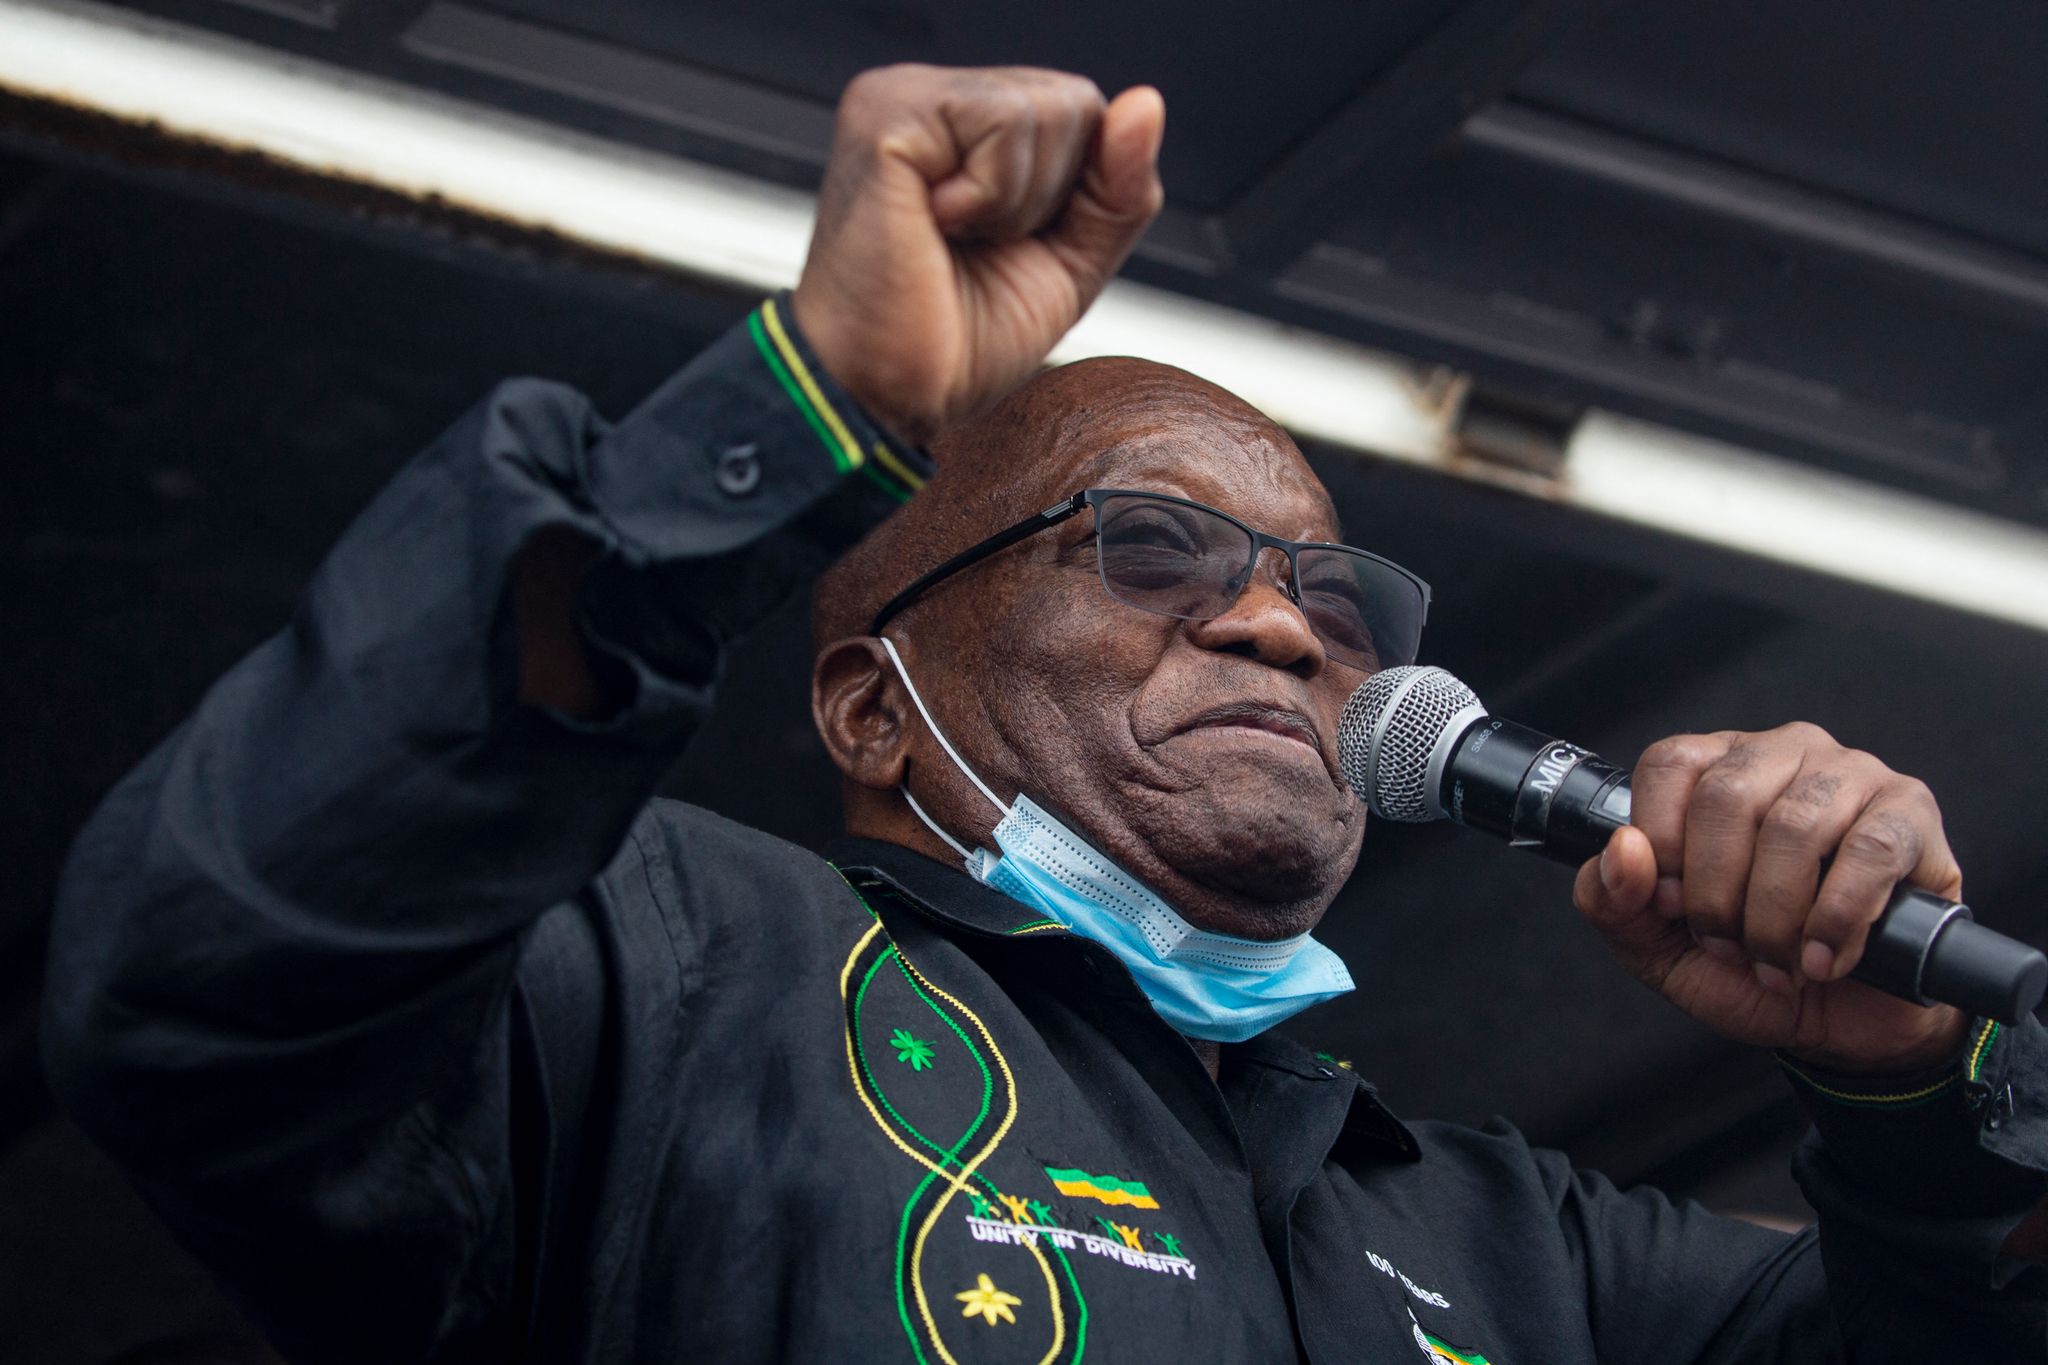 Afrique du Sud : les violences se multiplient et la situation dégénère après l'incarcération de l'ex-président Jacob Zuma